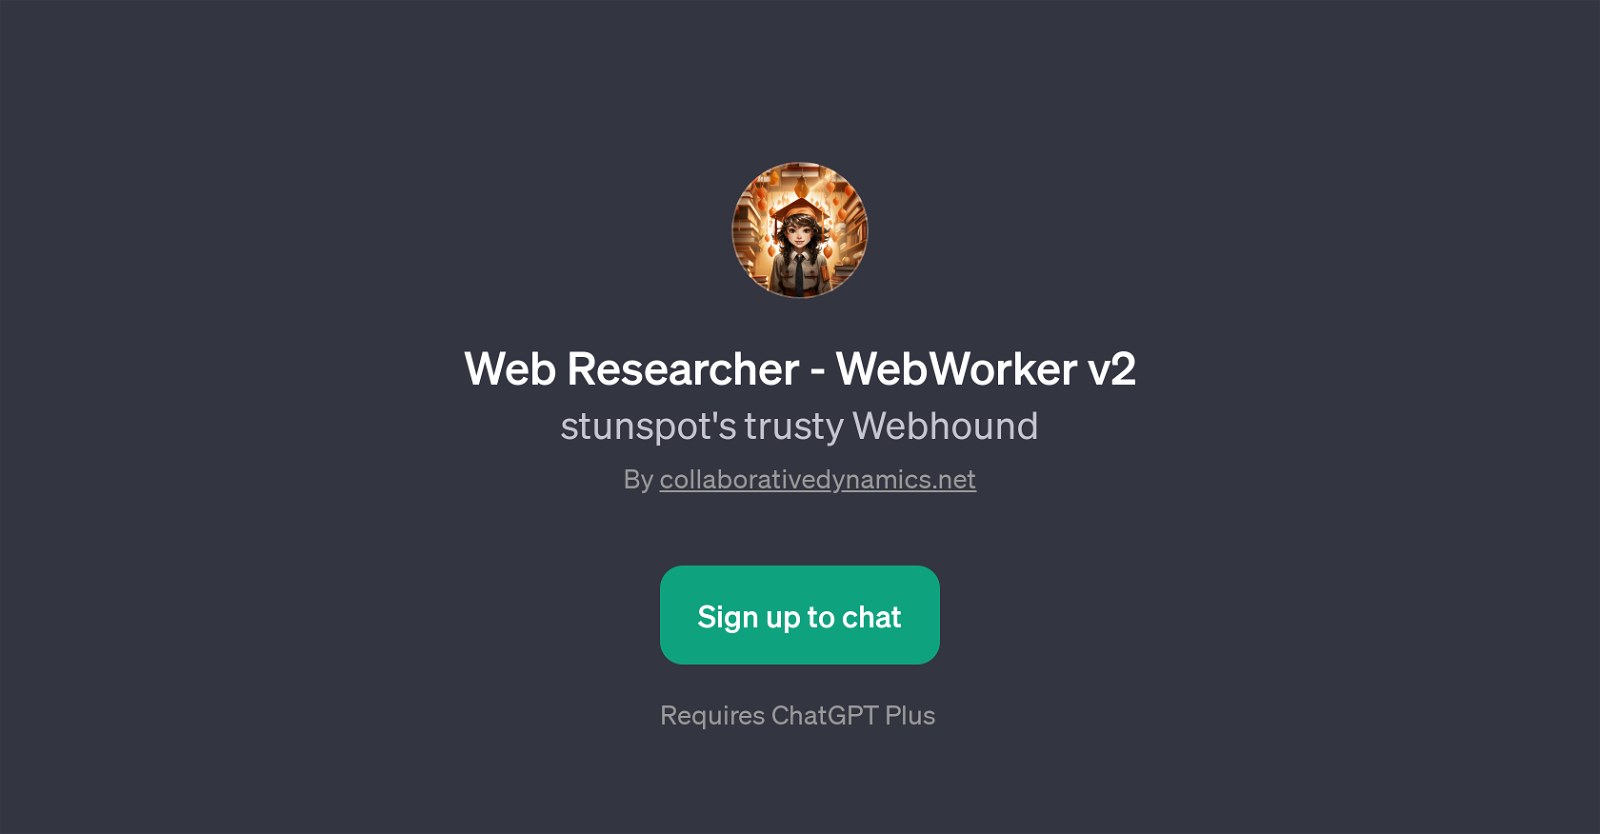 Web Researcher - WebWorker v2 website